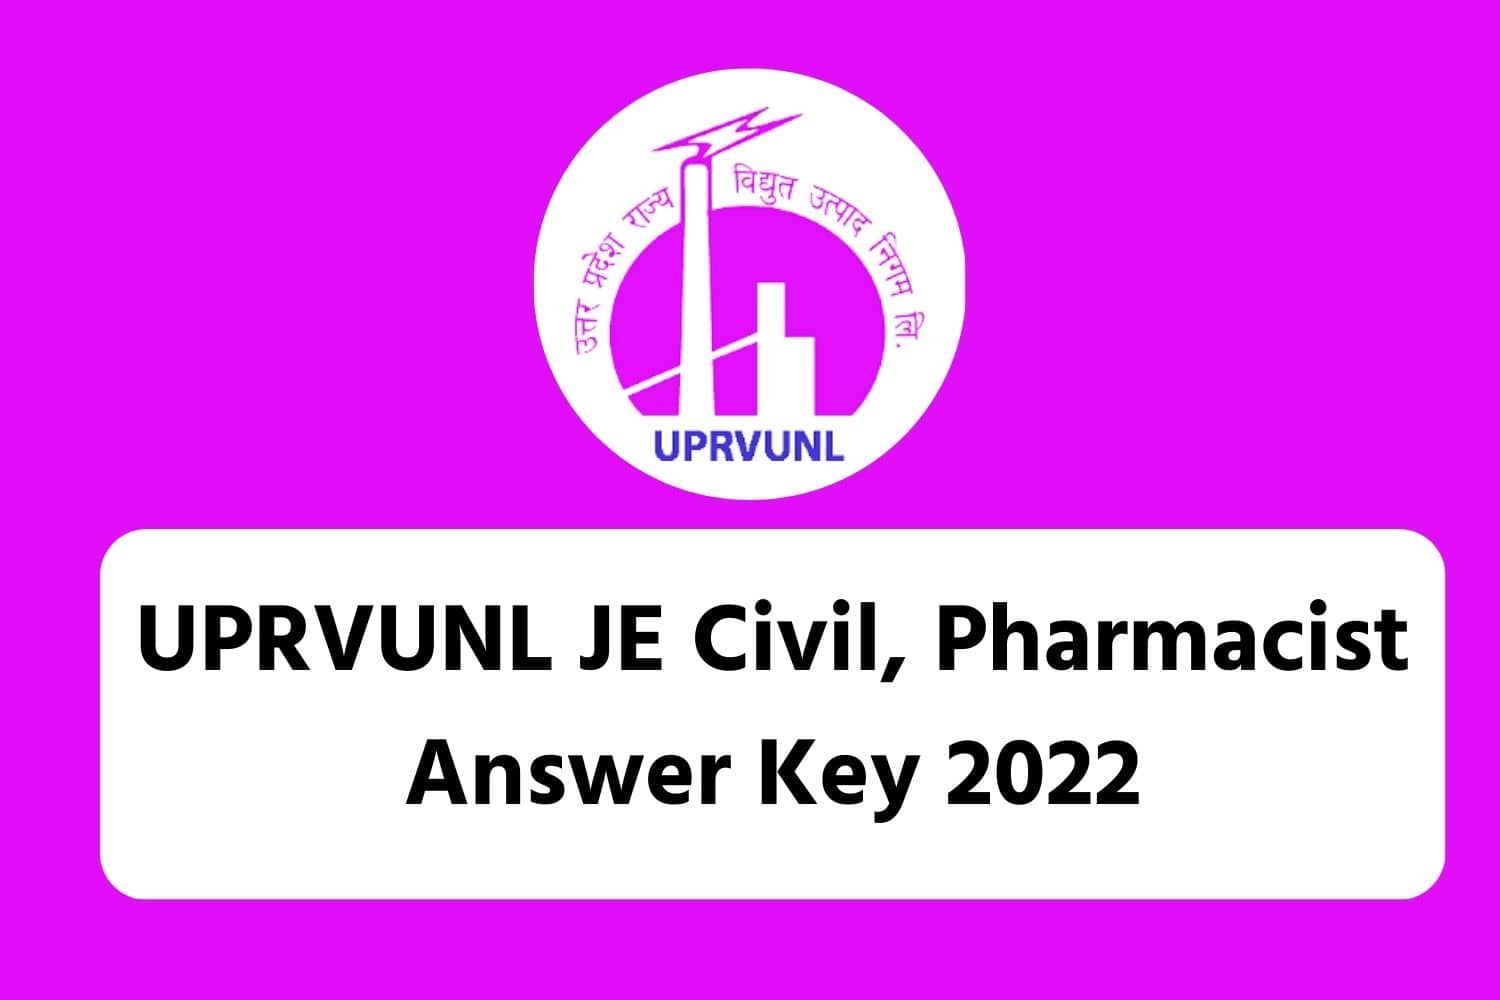 UPRVUNL JE Civil, Pharmacist Answer Key 2022 | UPRVUNL JE Civil, Pharmacist उत्तर कुंजी